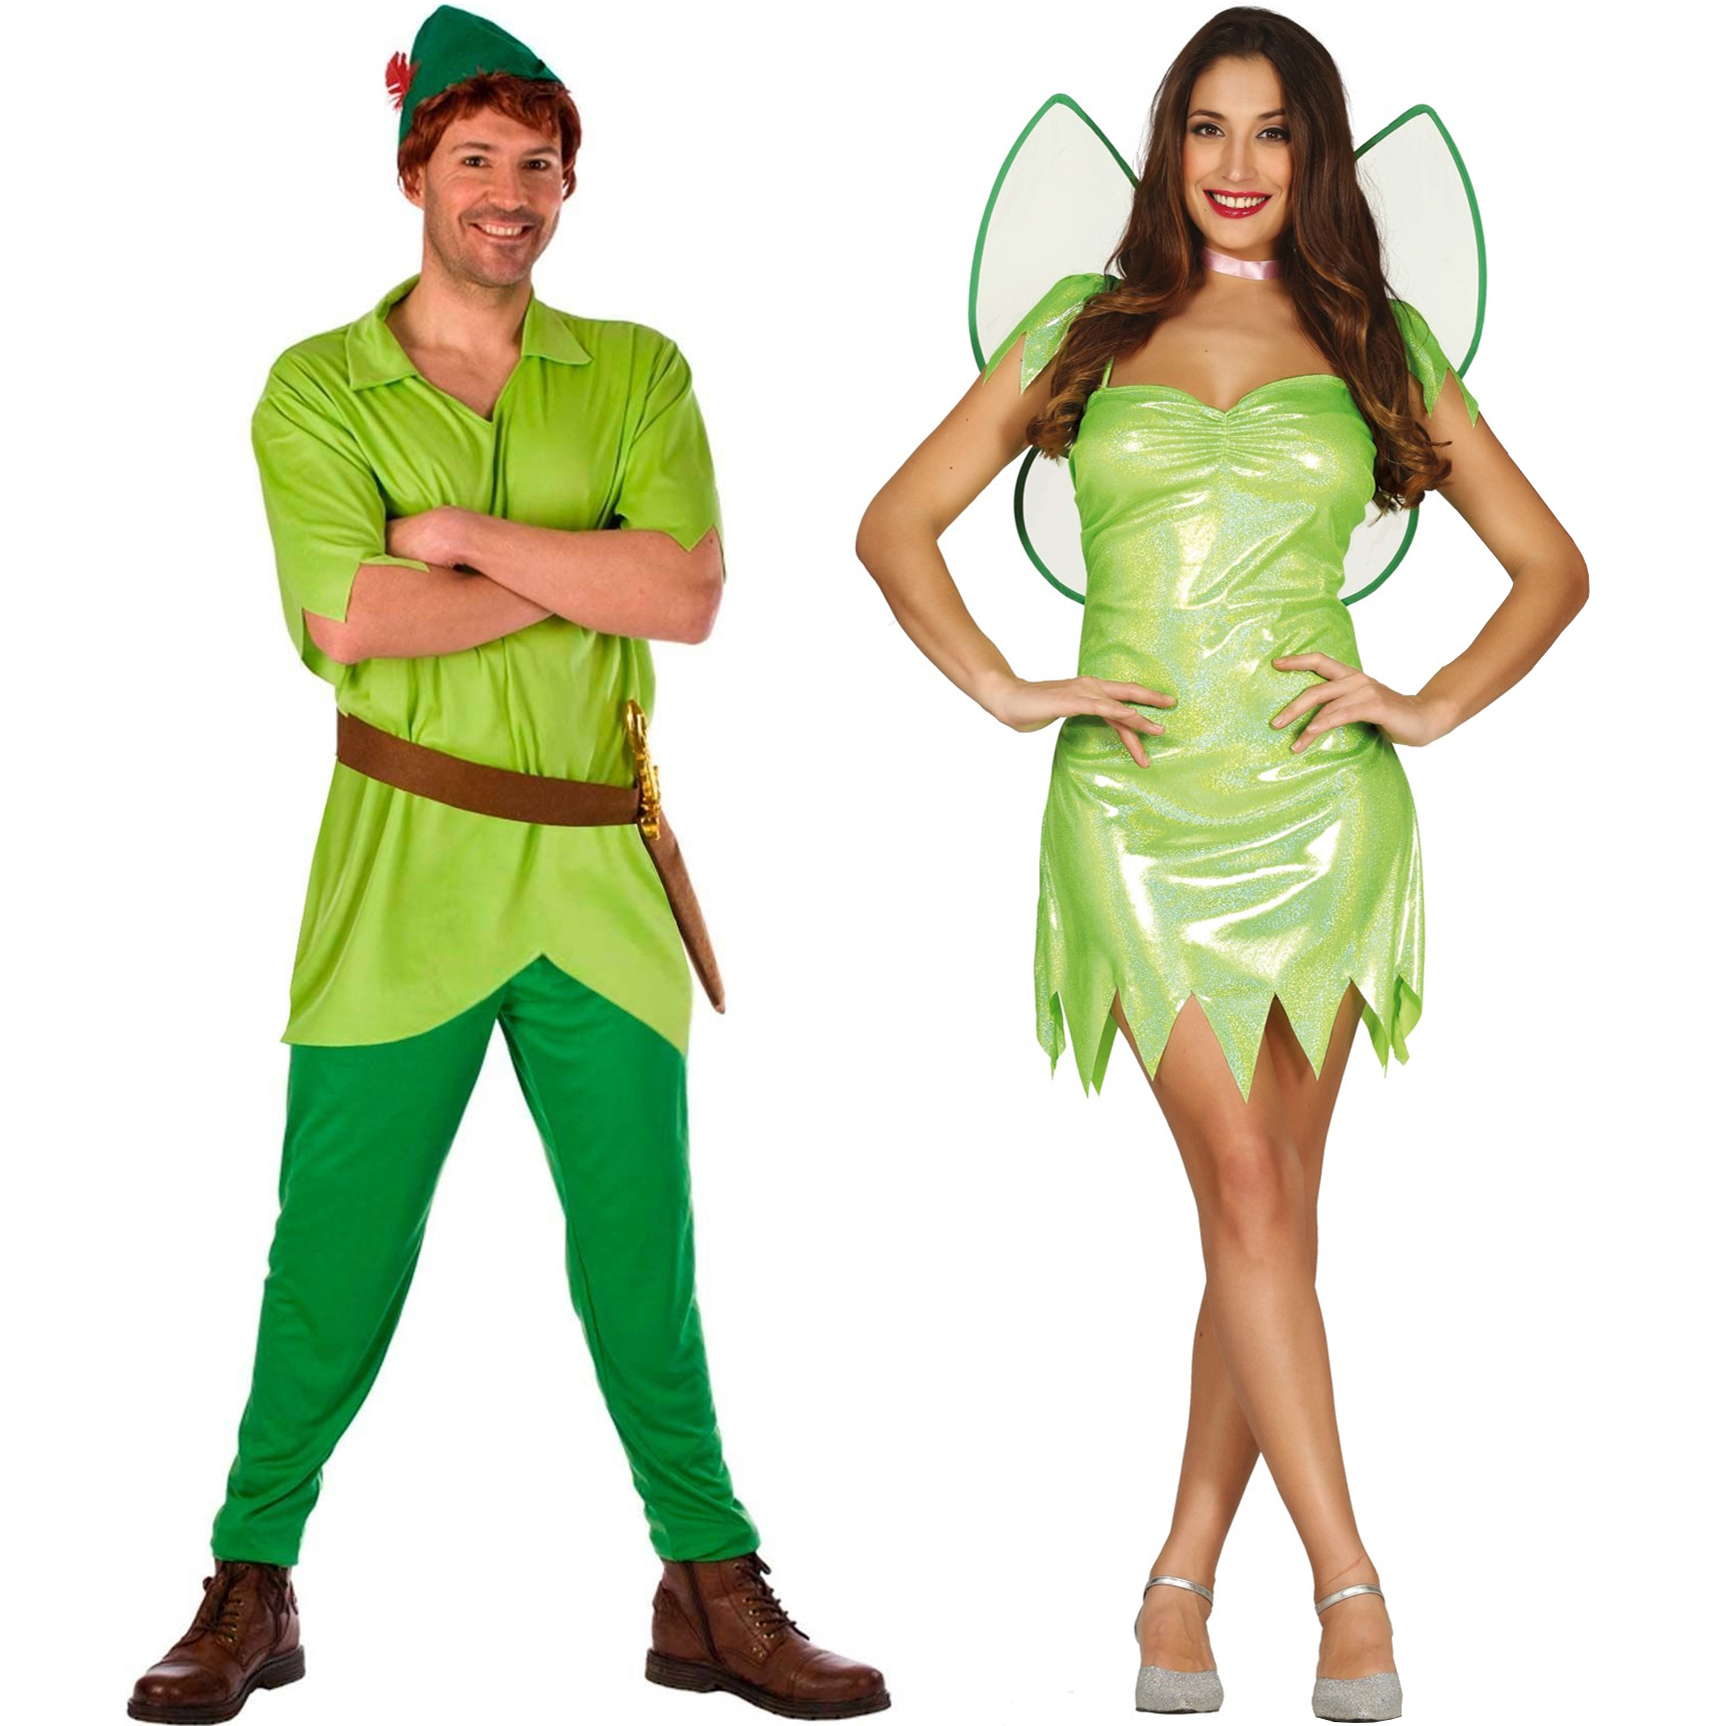 Posesión tanto Eficiente Comprar online Disfraces en pareja de Campanilla y Peter Pan